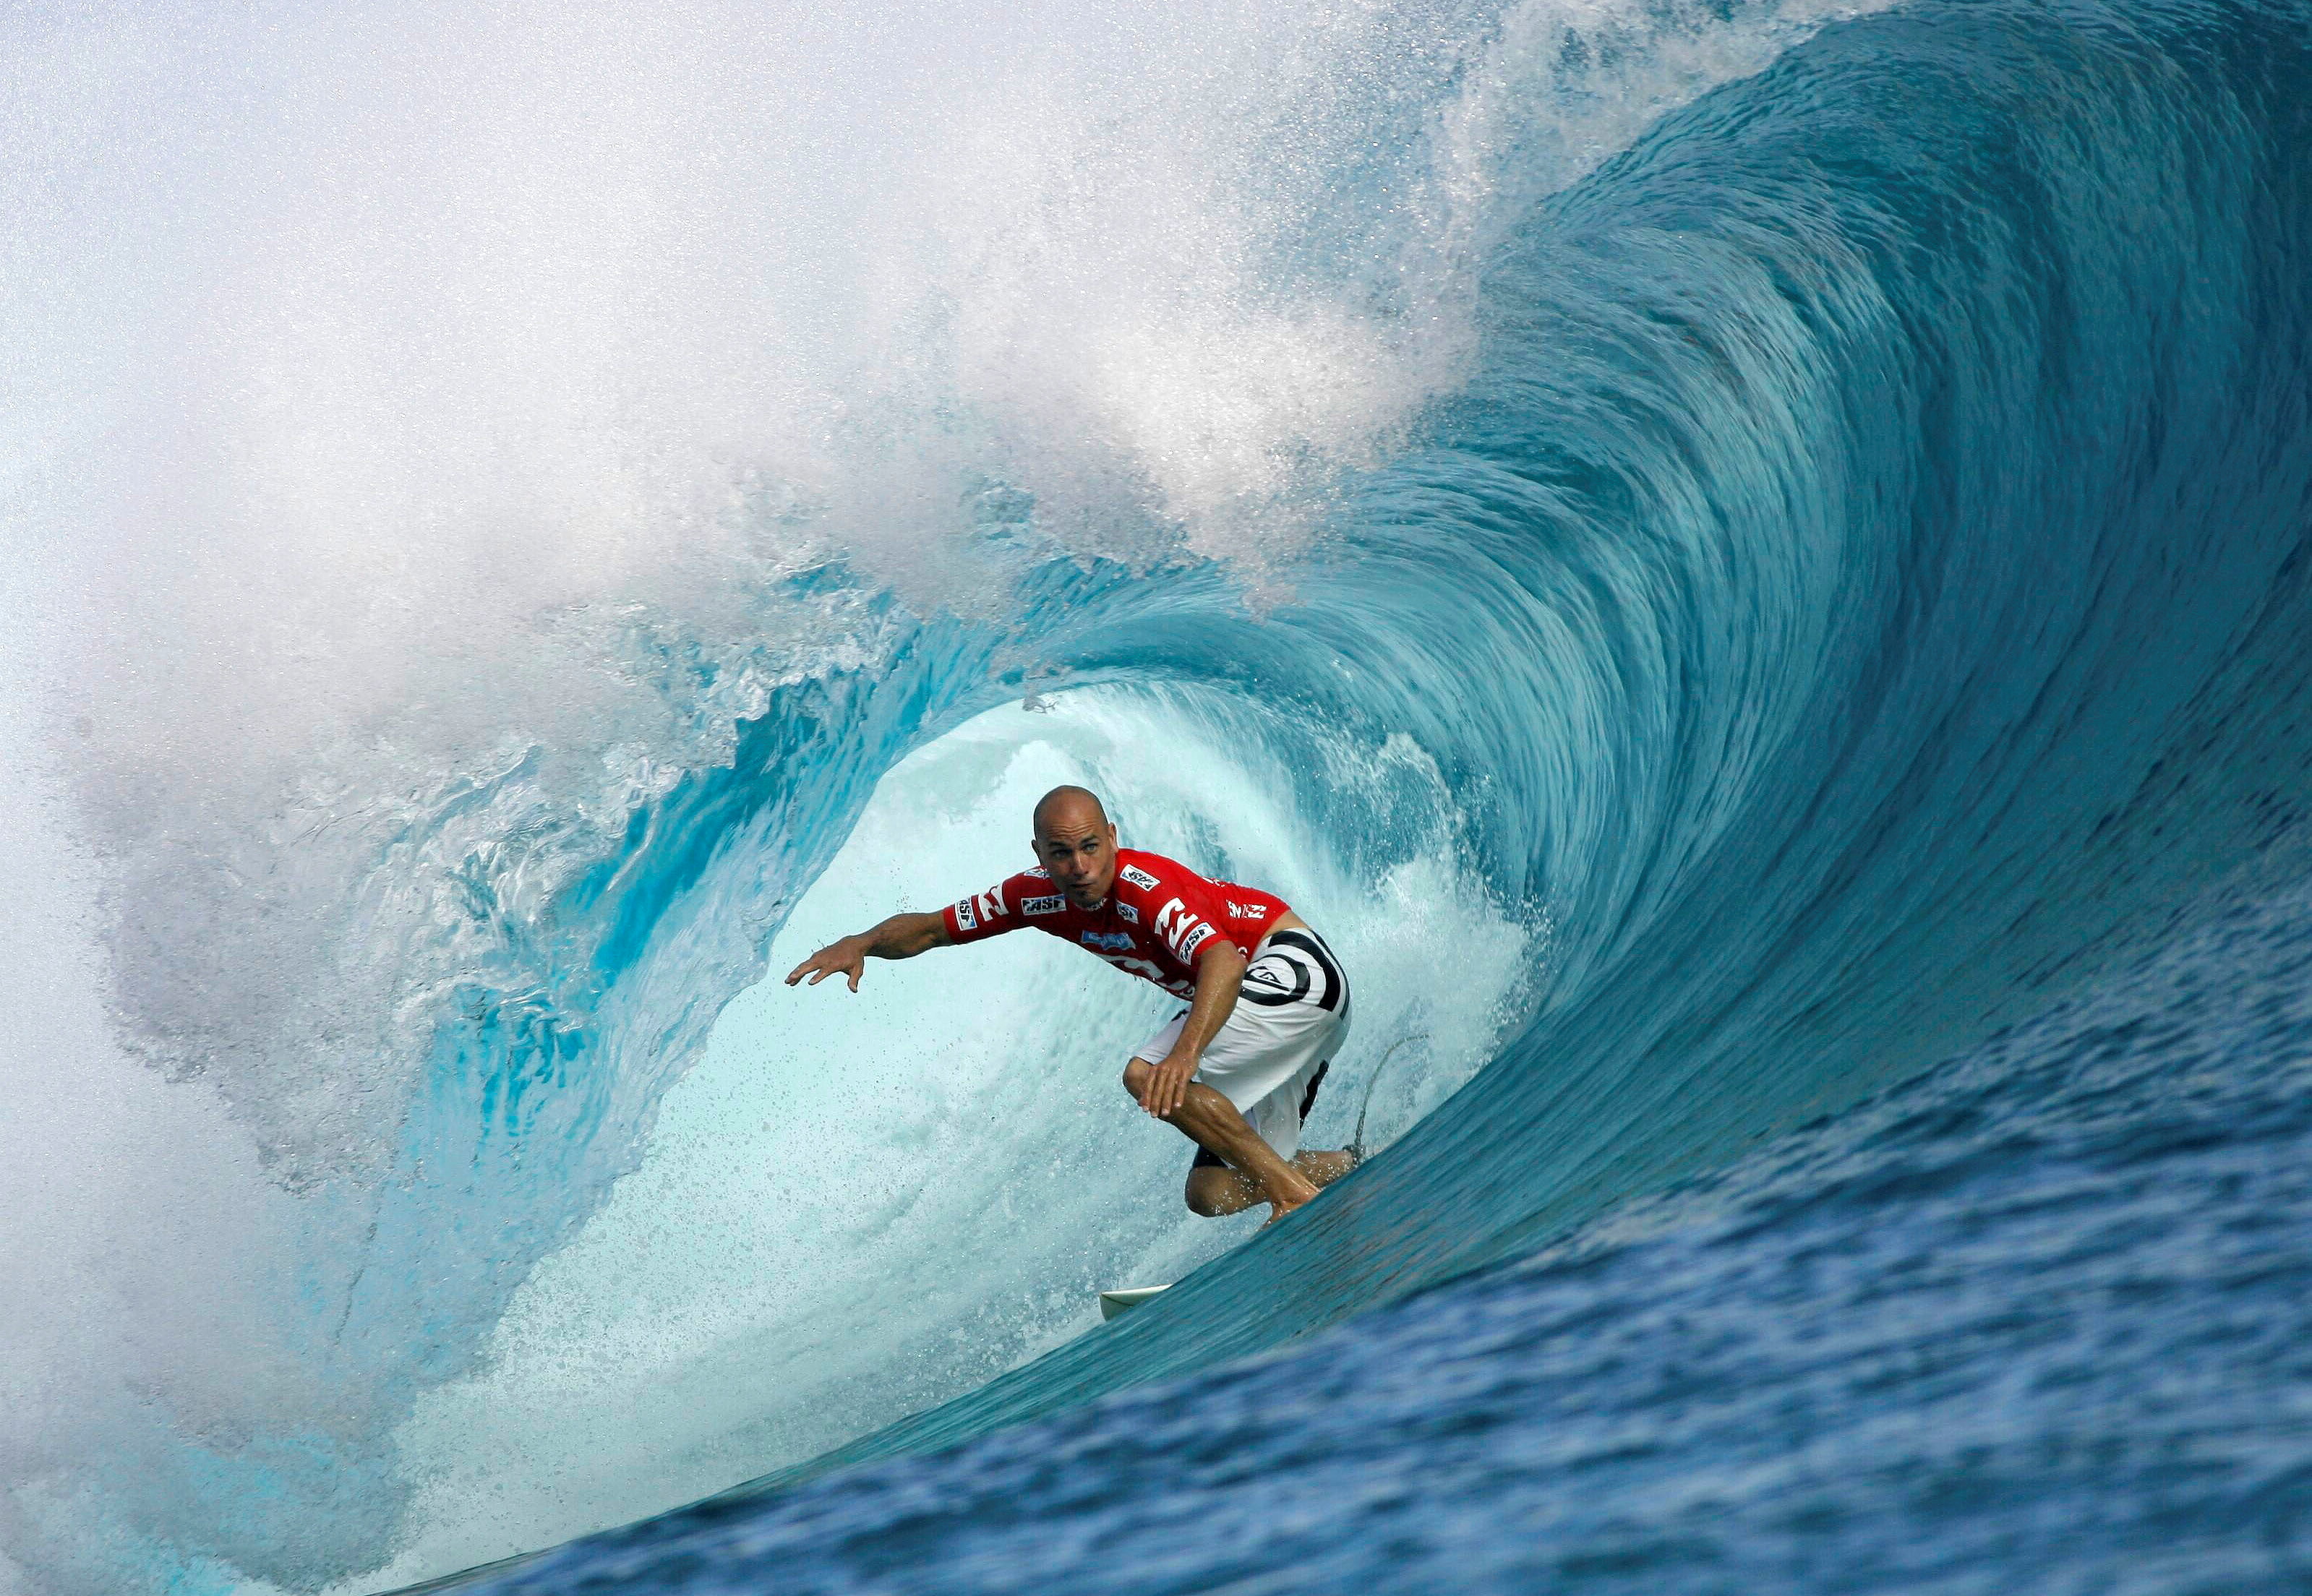 Imagen de archivo de una surfista durante una competencia en USA (Foto: REUTERS/Joseba Etxaburu (FRENCH POLYNESIA))